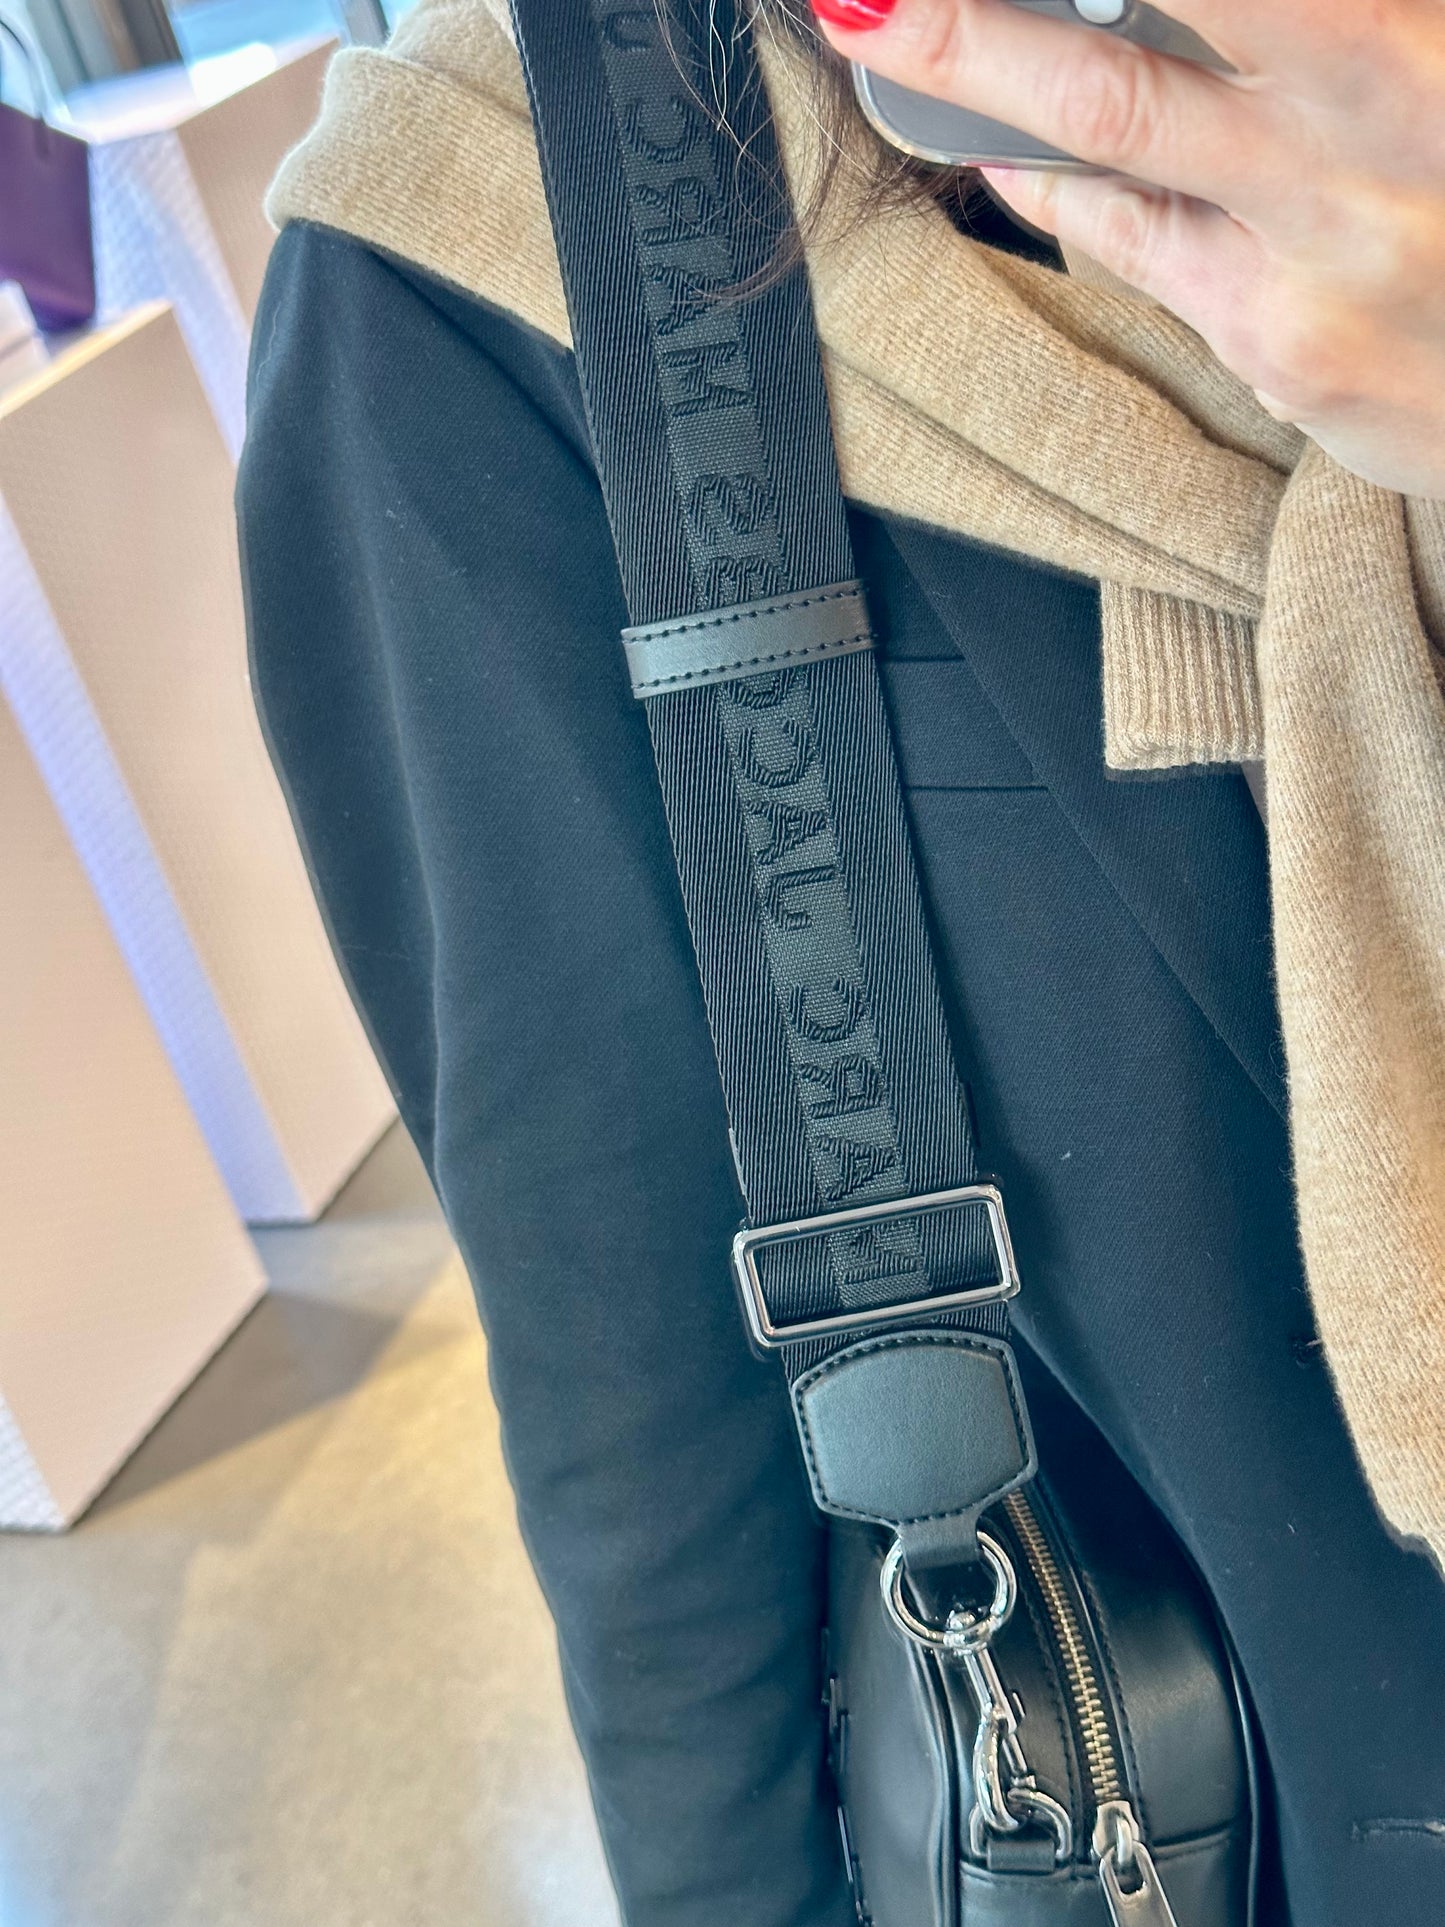 Marc Jacobs Camera Sling Bag